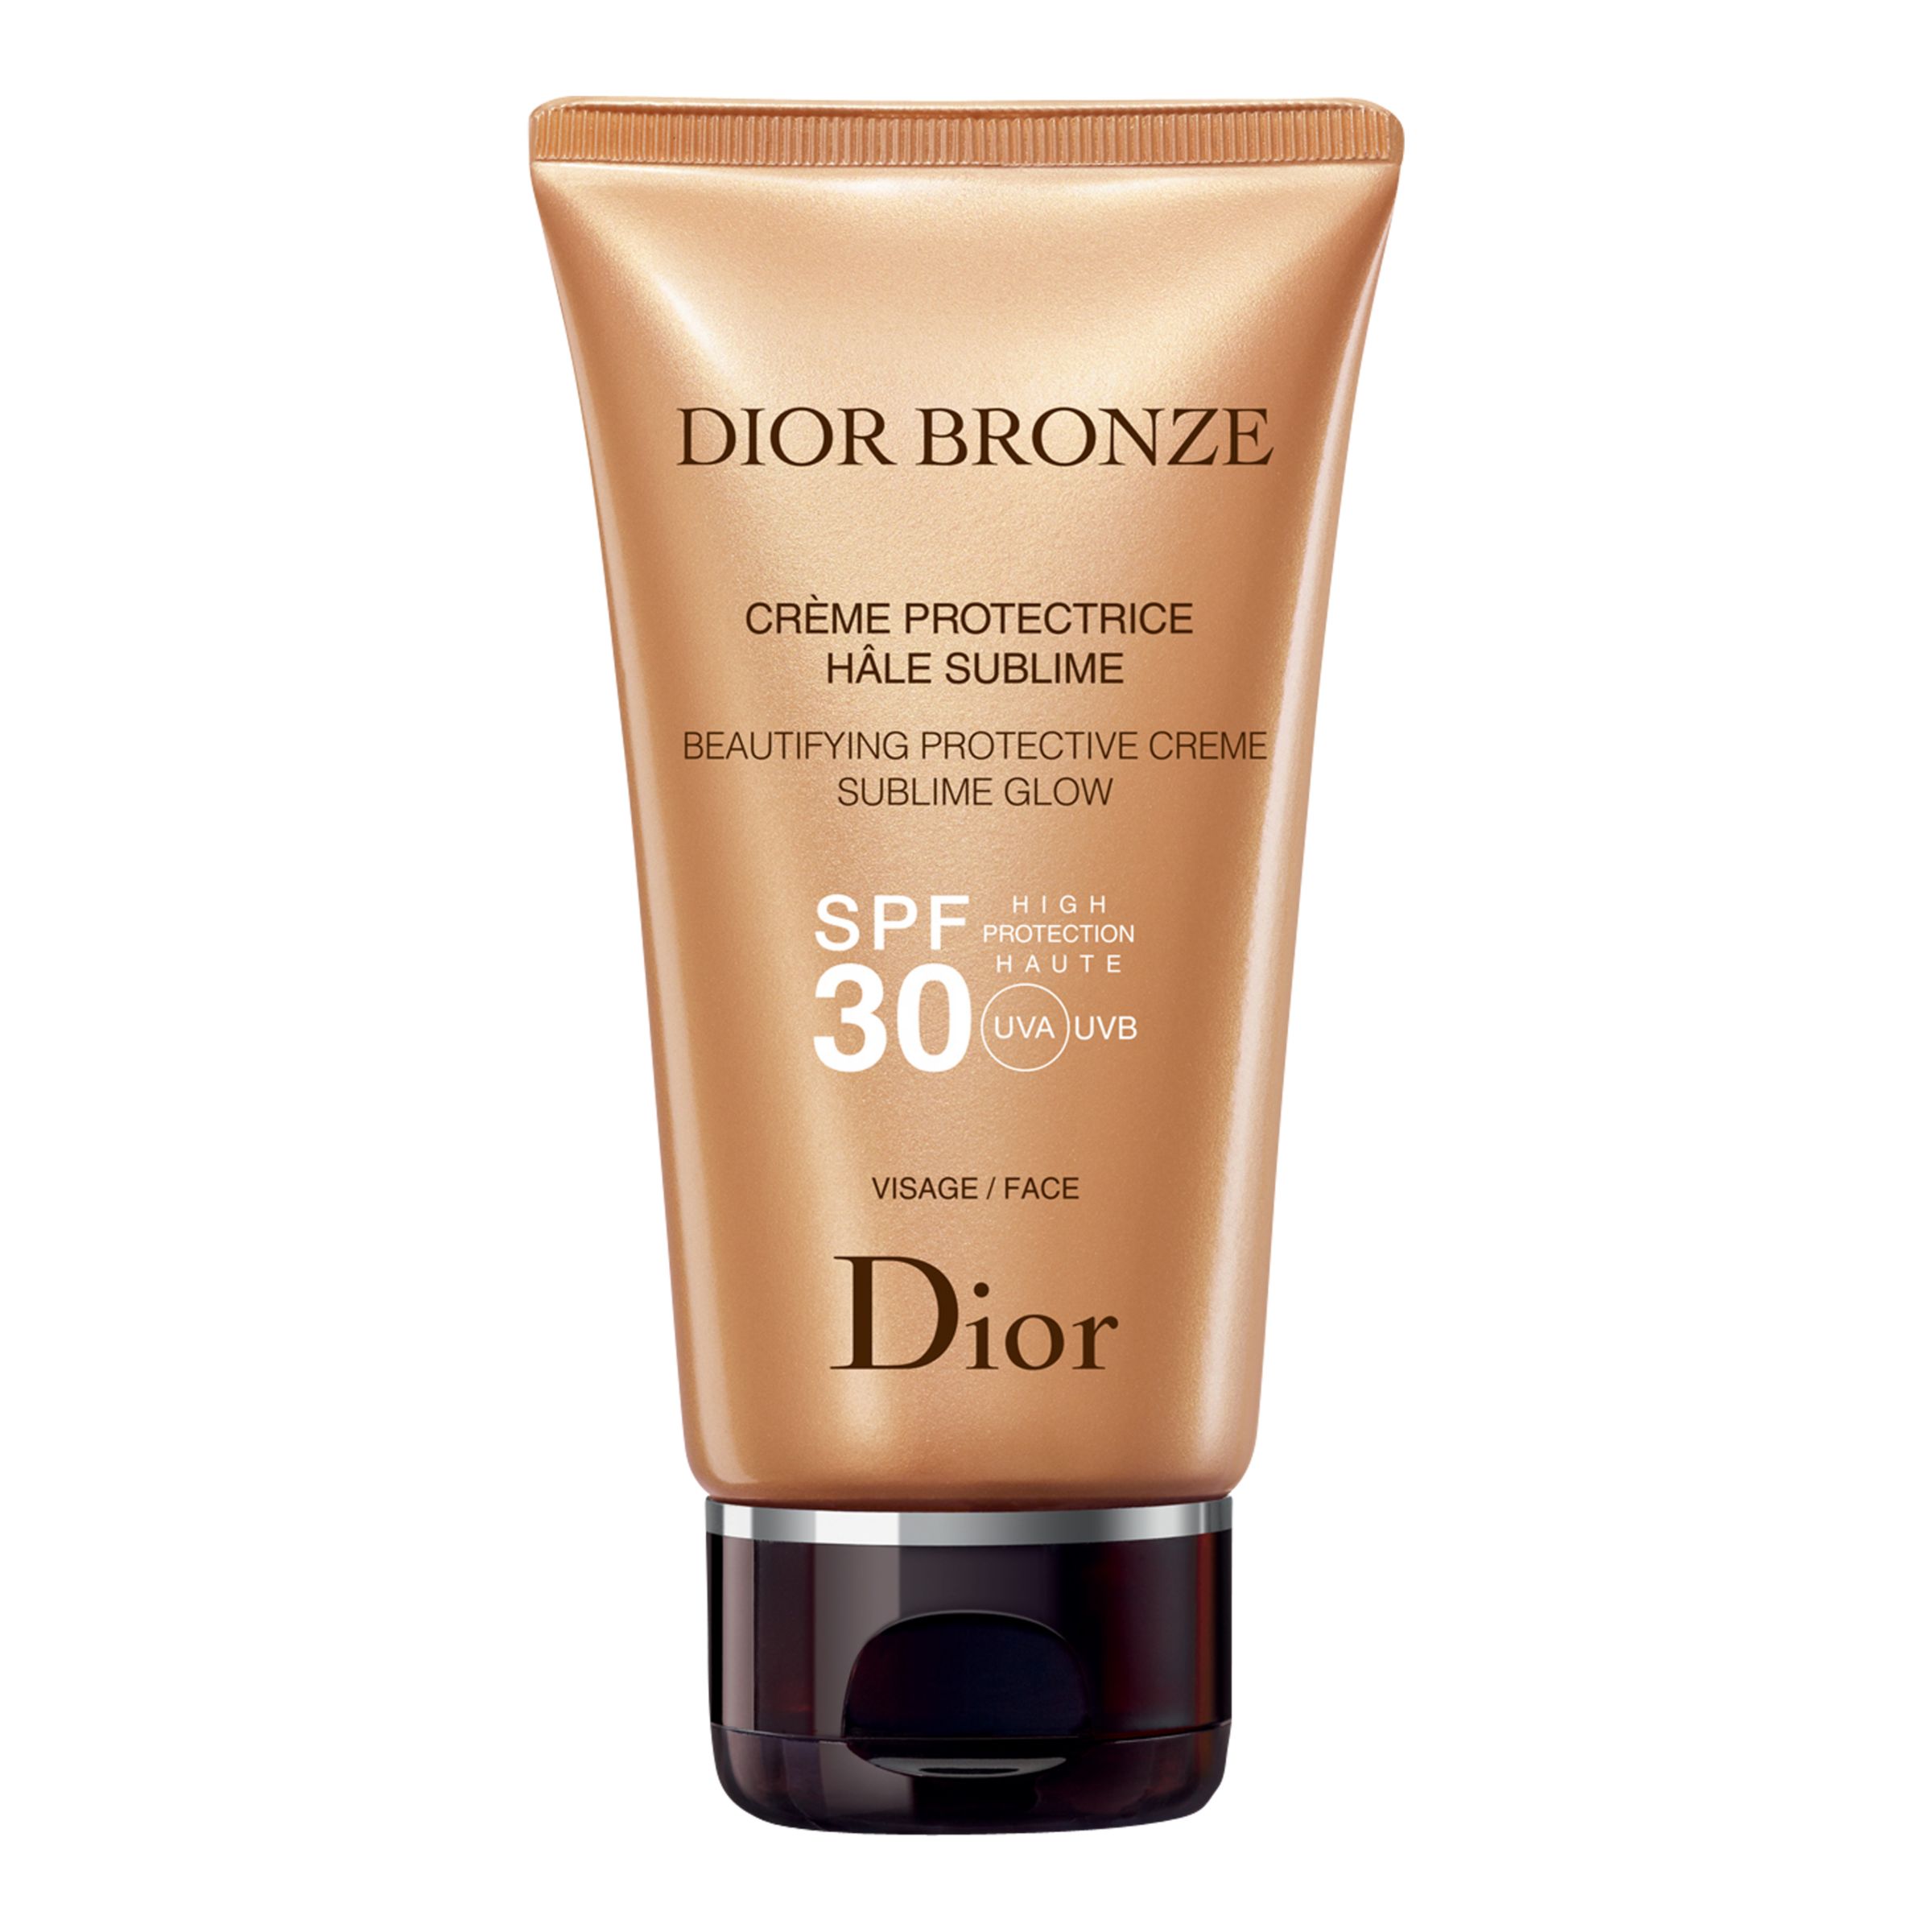 dior bronze 30